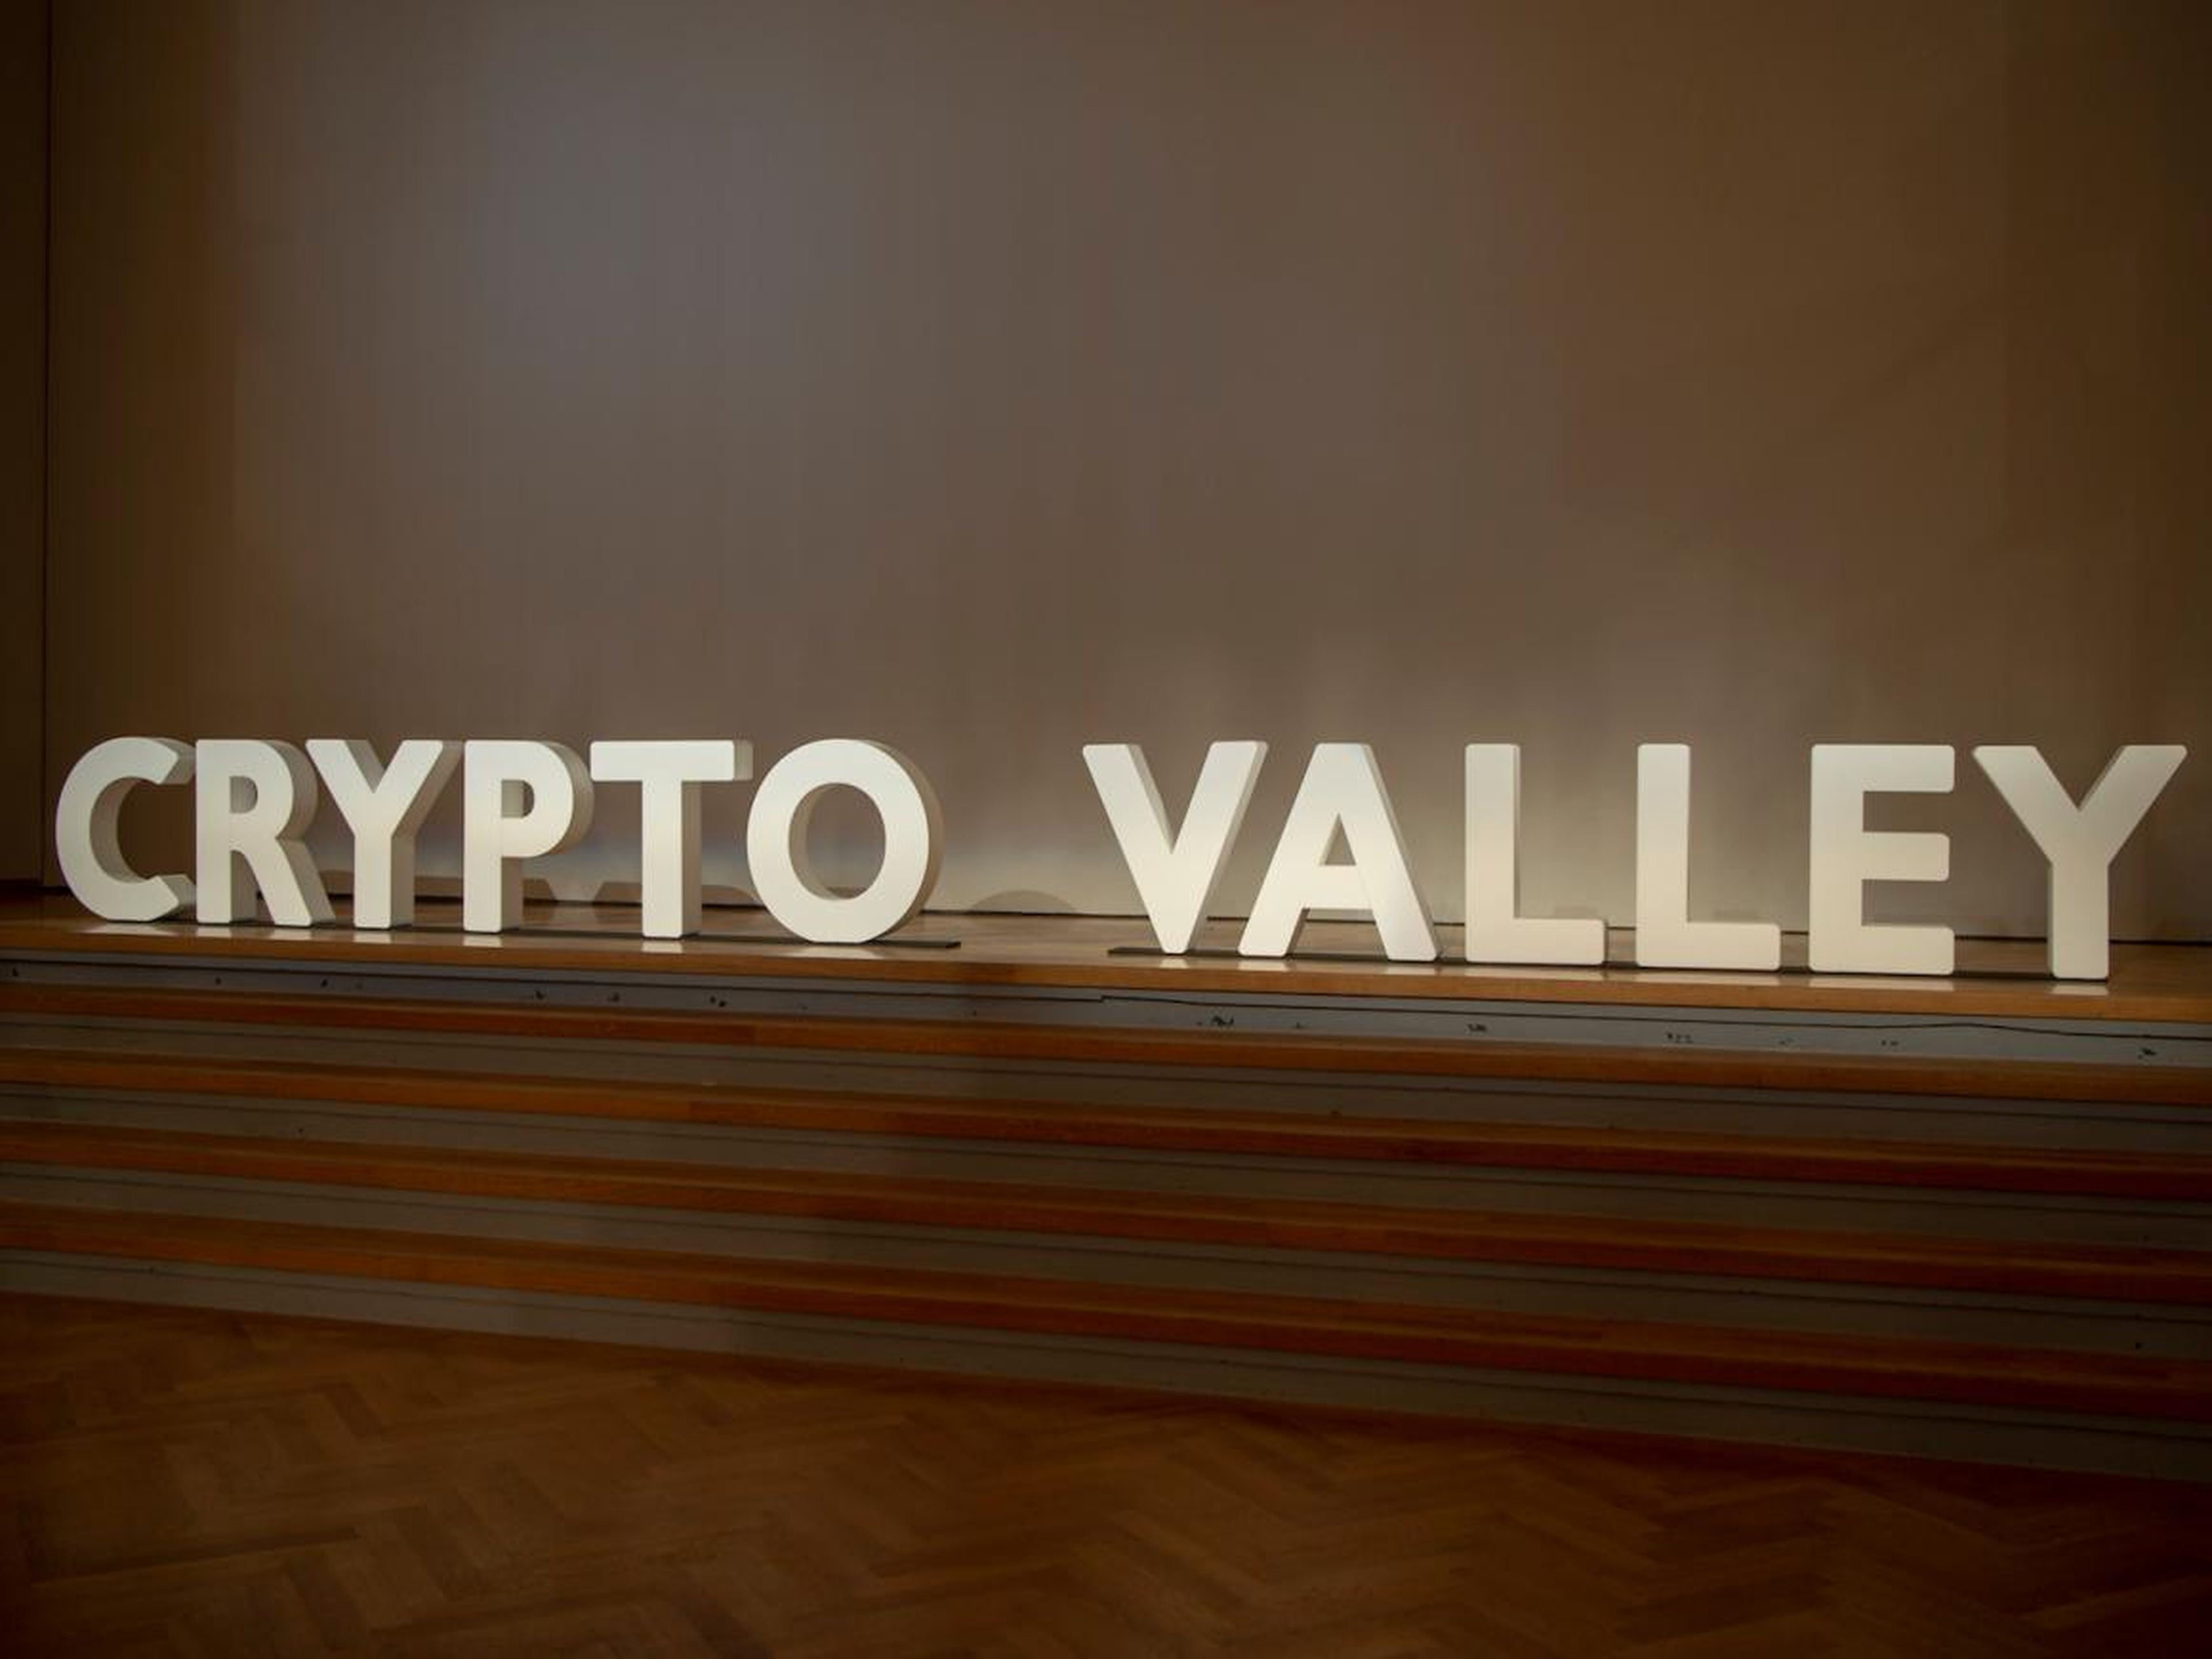 Un letrero en la conferencia Crypto Valley.